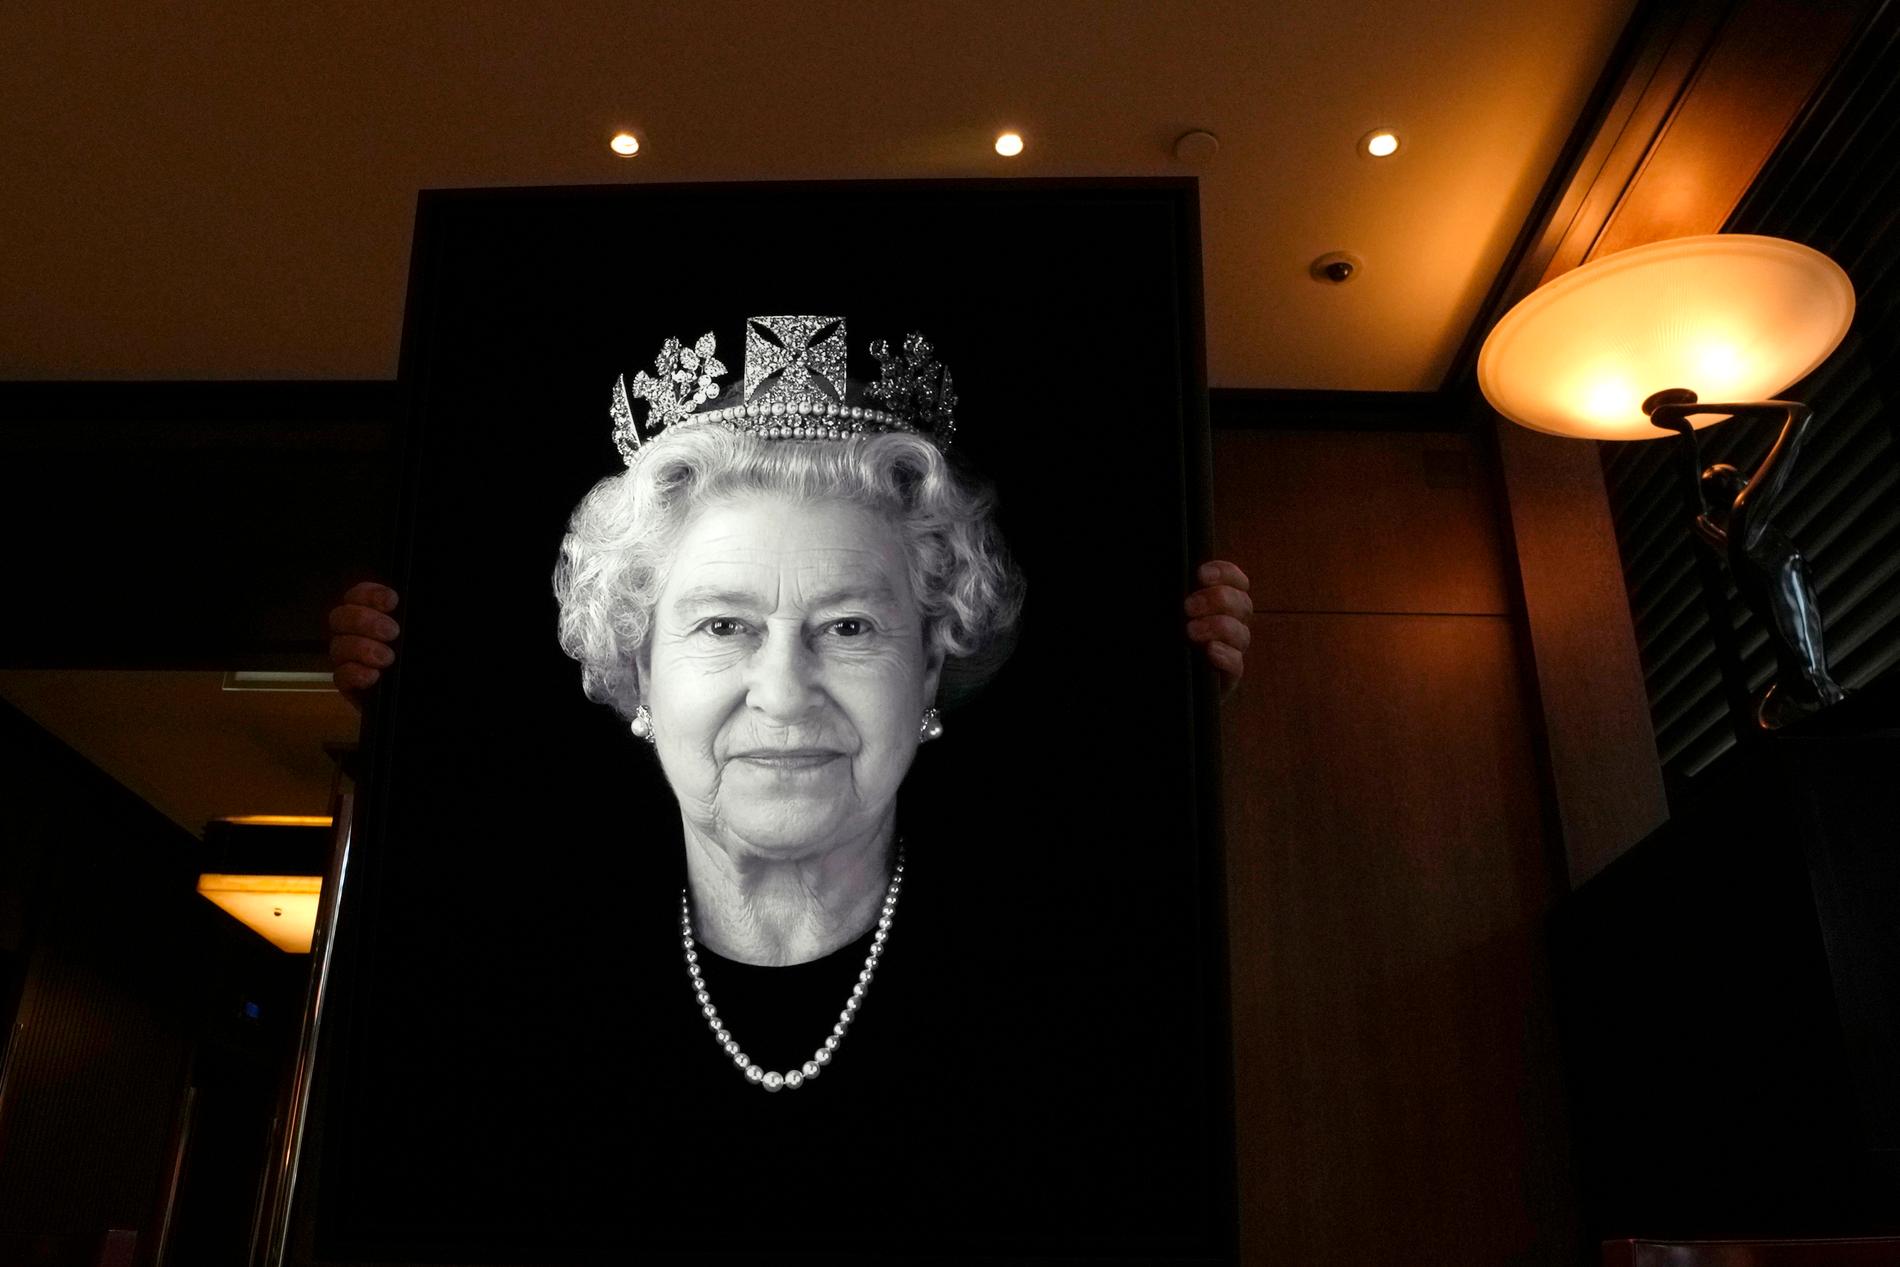 I 2004 laget kunstneren Rob Munday det første 3D/holografiske portrettet av dronning Elizabeth II. I anledning sommerens jubileumsfeiring viste han frem et tidligere usett portrett - der han fanger monarken i et sjeldent smil på et slikt offentlig portrett med krone. 